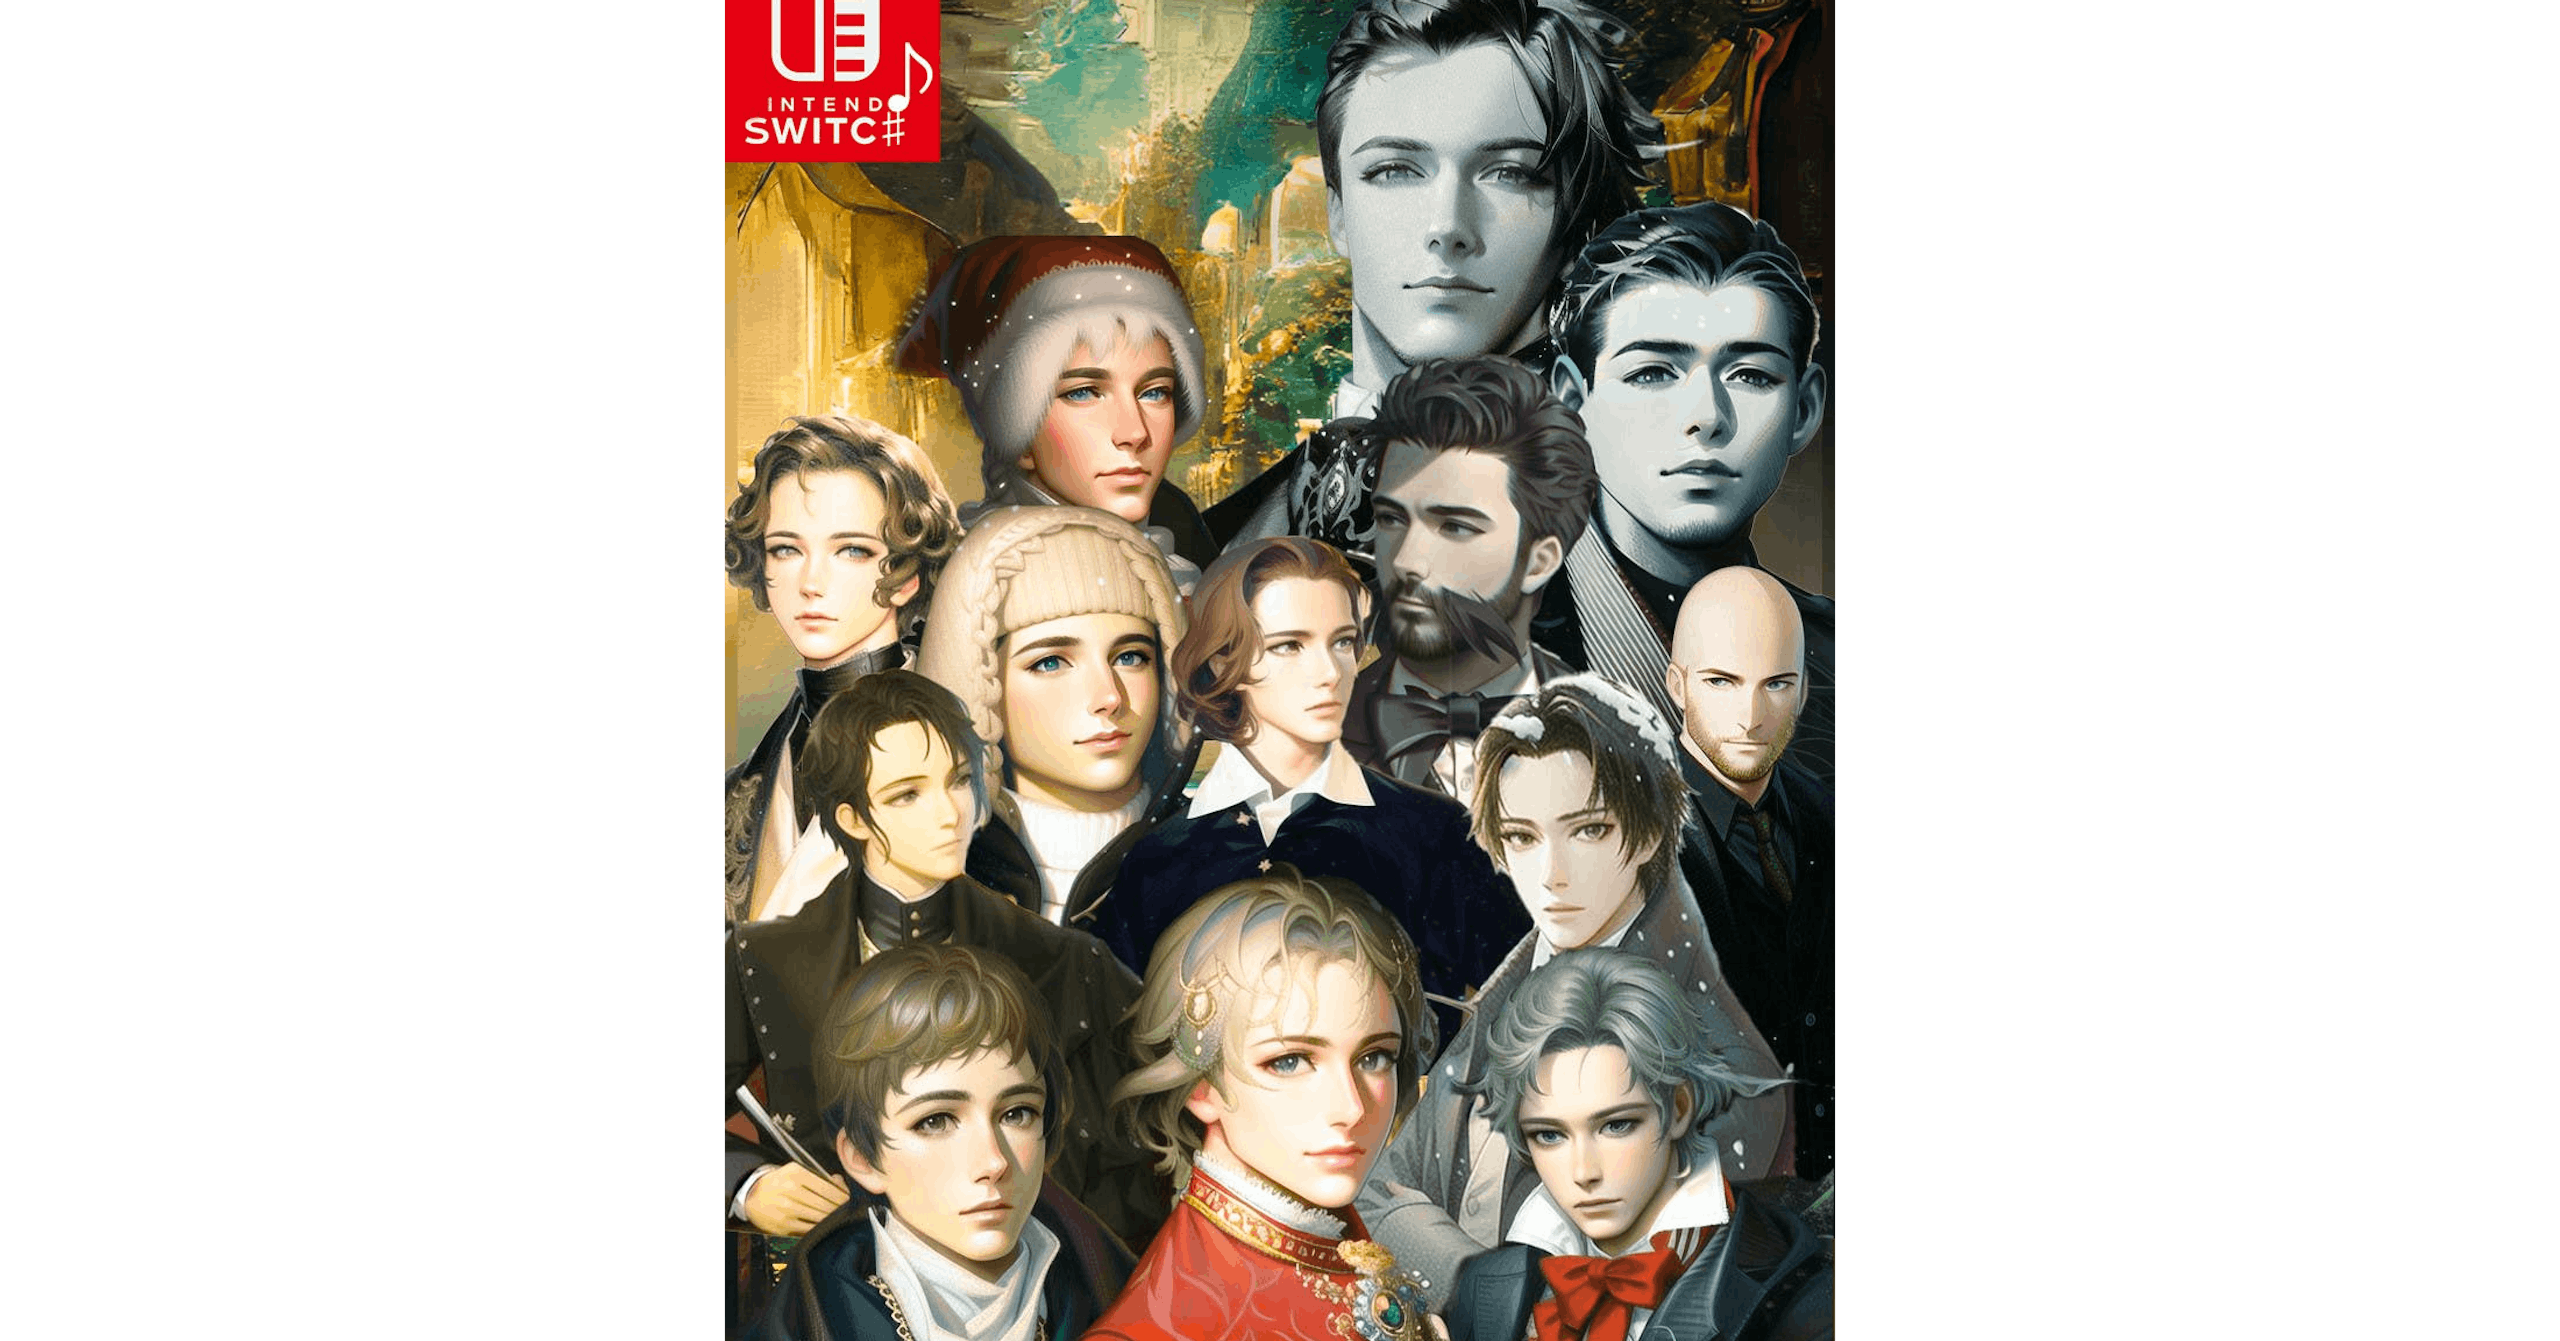 照片中提到了UB、INTEND、SWITC#，跟漢堡大學有關，包含了電視節目、路德維希·範·貝多芬、古典音樂、沃爾夫岡·阿馬德烏斯·莫扎特、單簧管